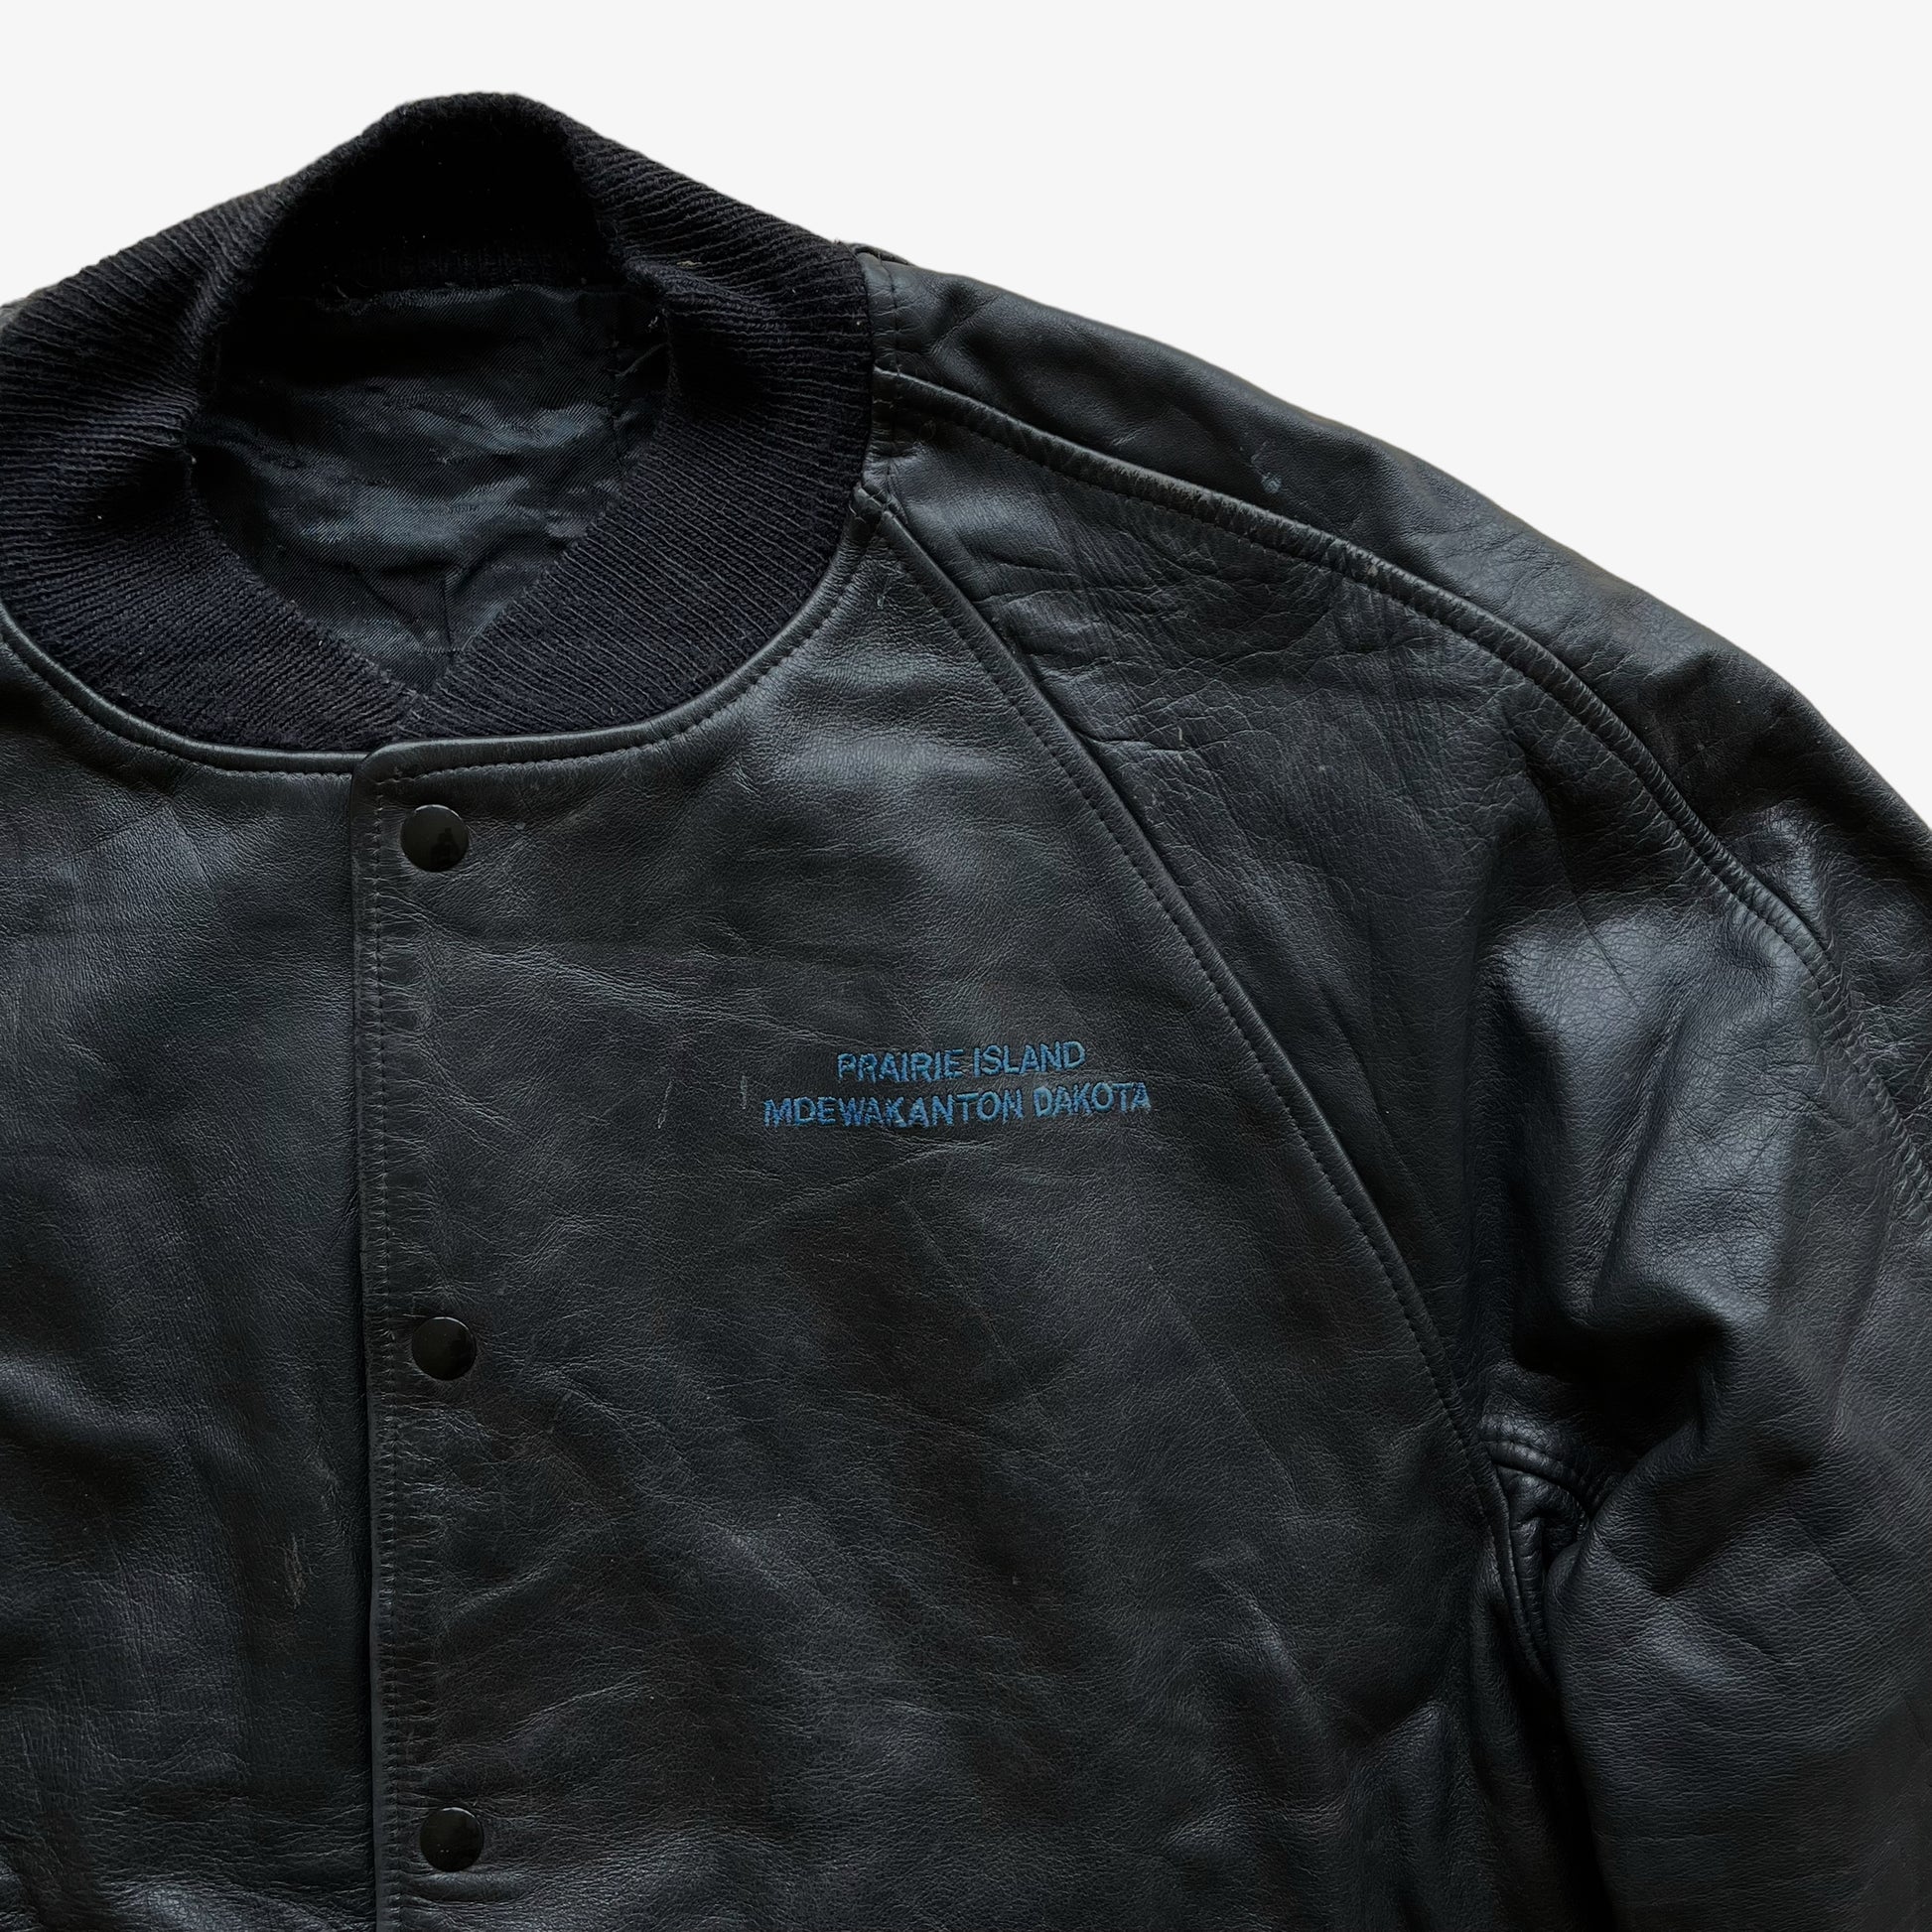 Vintage 90s Praire Island Mdewakanton Dakota Leather Jacket Logo - Casspios Dream